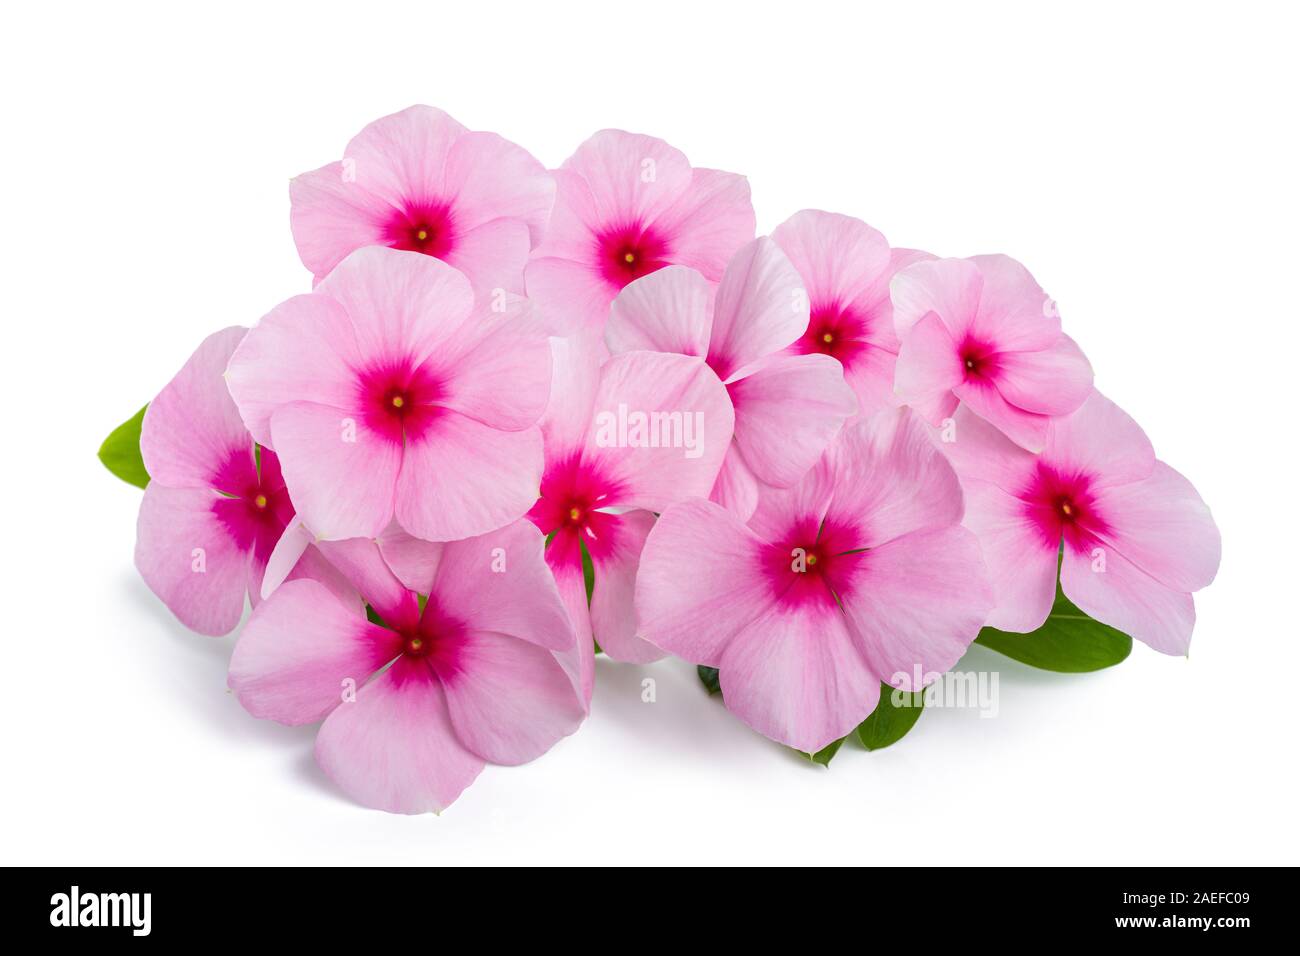 Madagascar periwinkle flowers isolated on white background Stock Photo